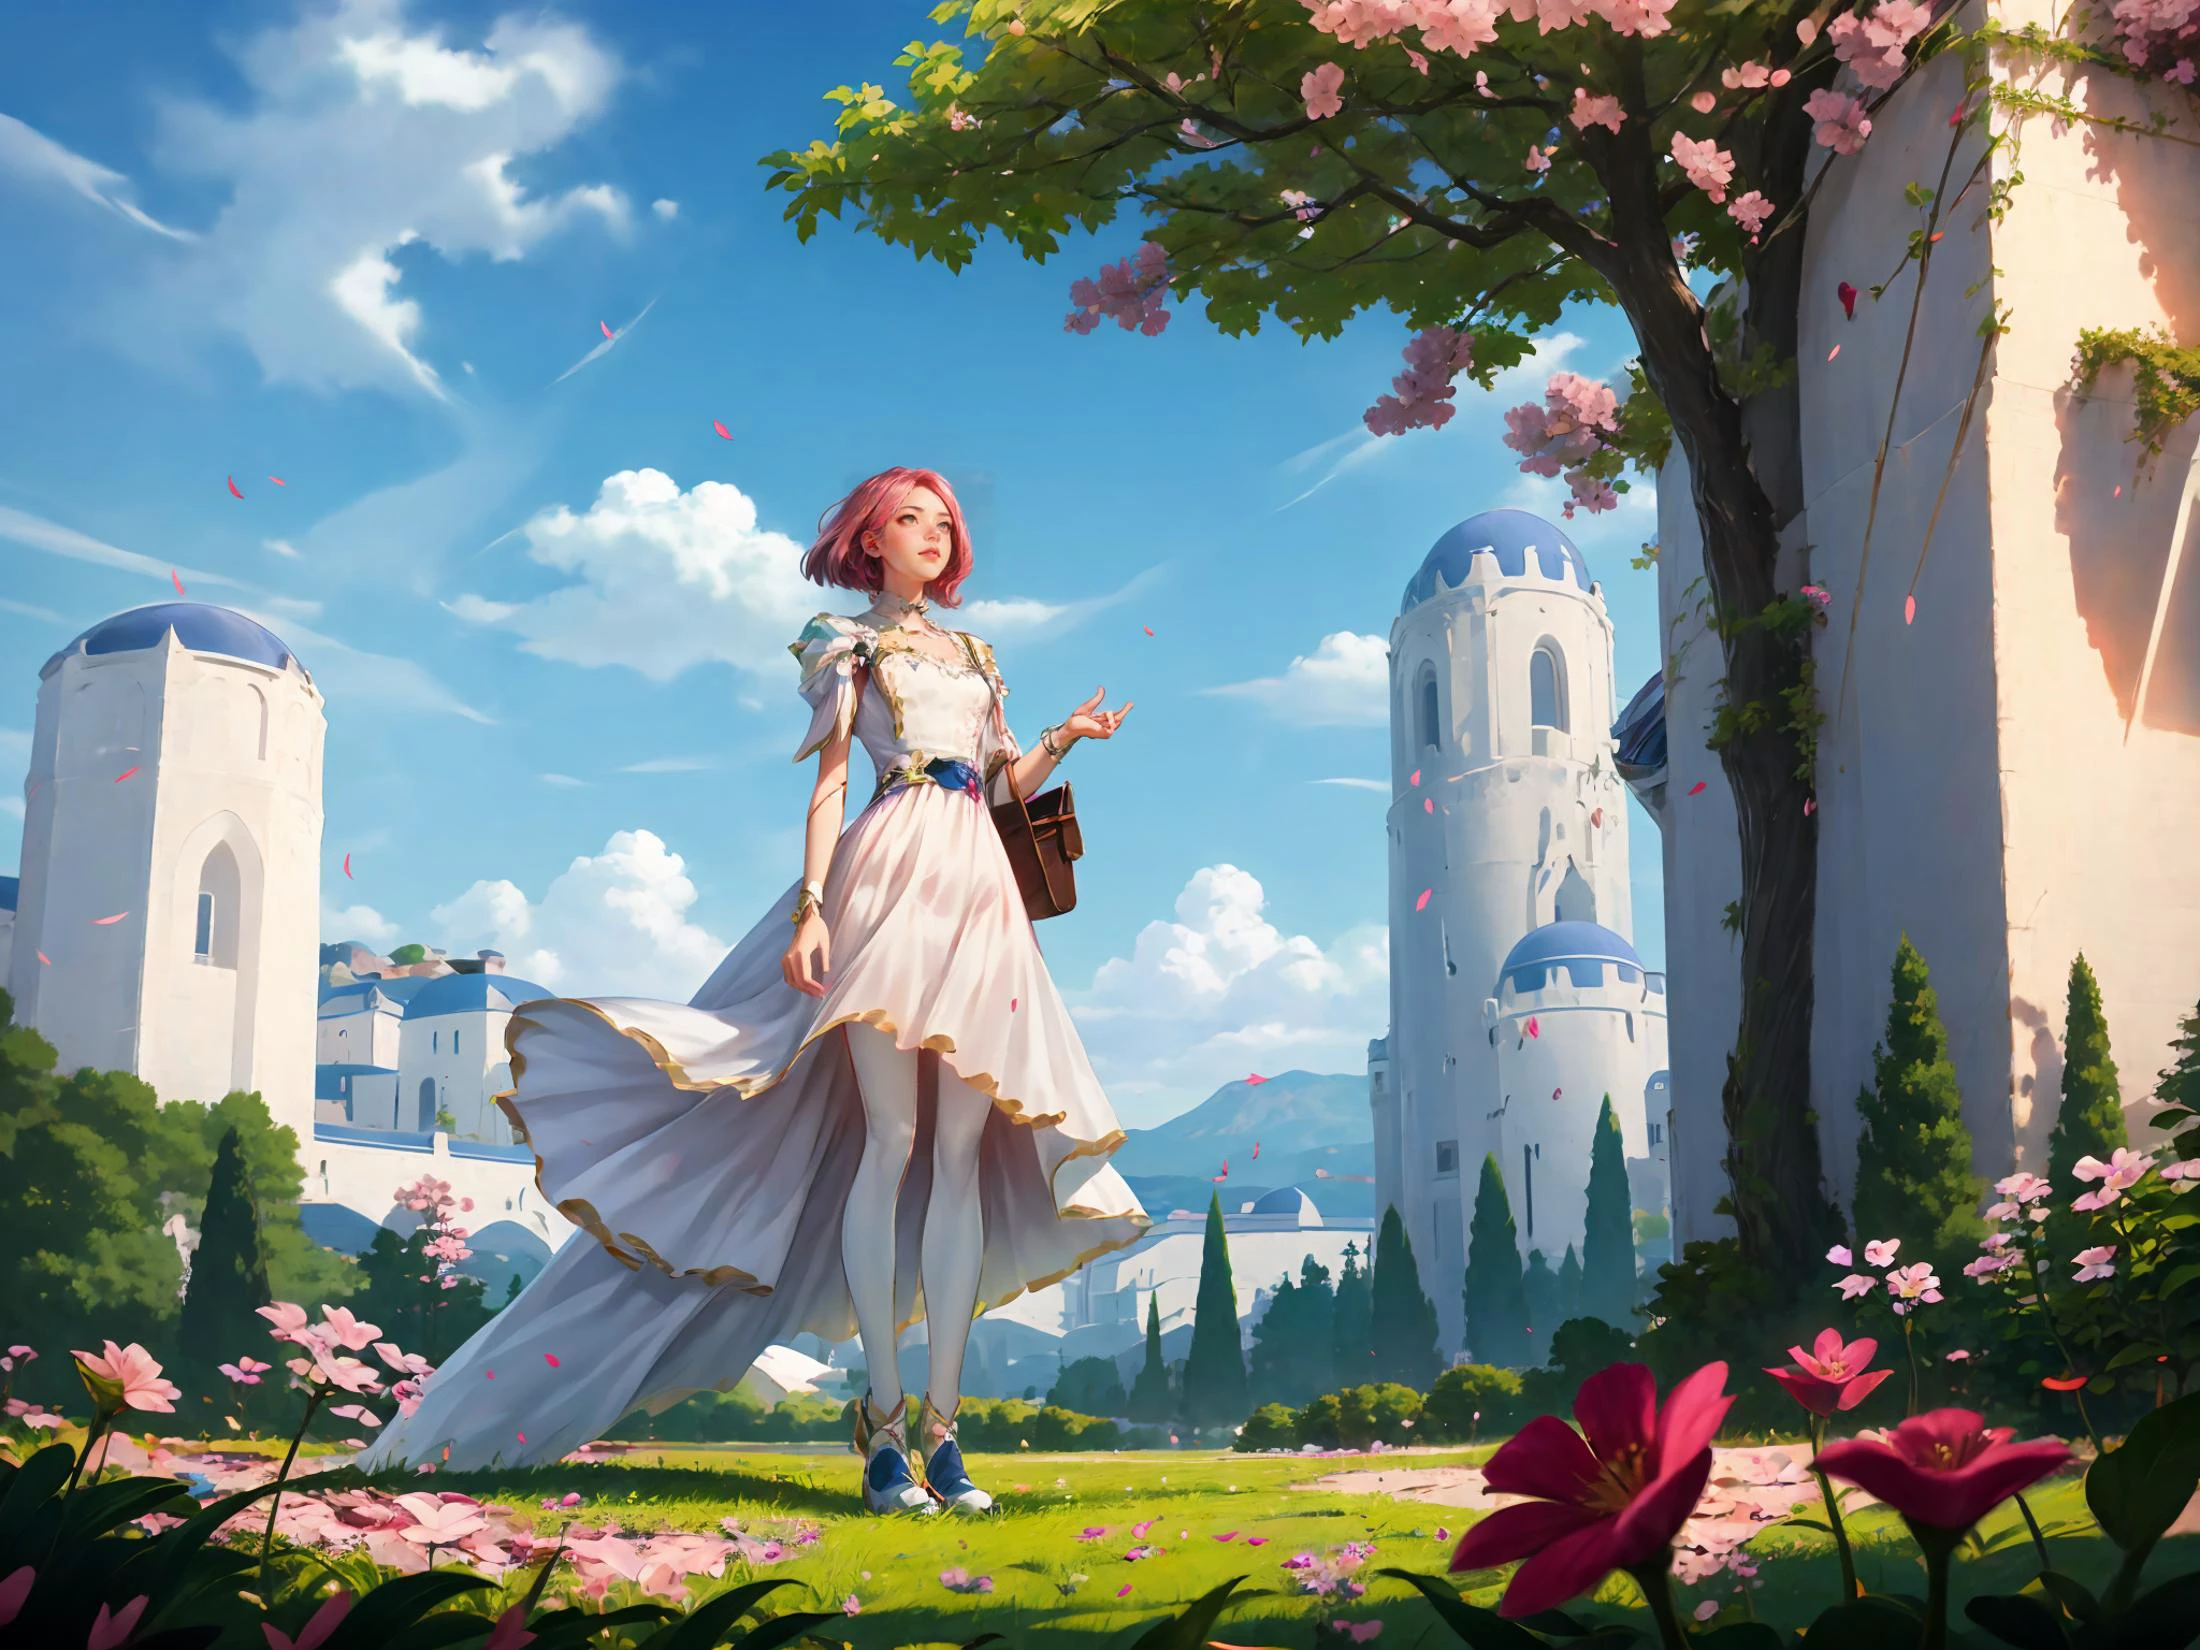 教育する,笑,笑スタイル,ゲームCG,ピンクの花が咲いた木と青い空の前に立つ白いドレスを着た女性,Chizuko Yoshida,rossdraws グローバルイルミネーション,詳細な絵画,